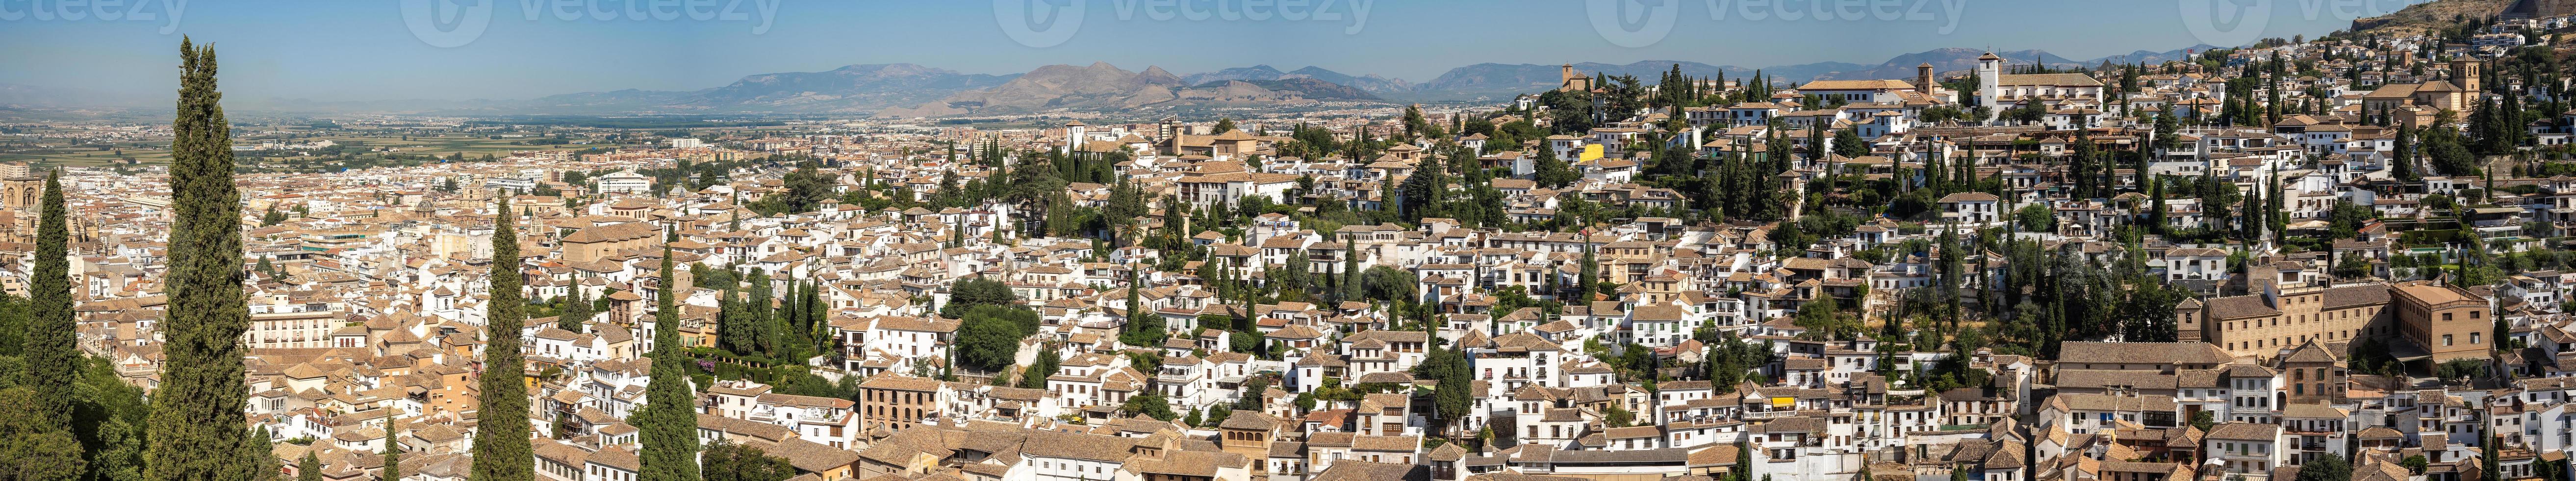 albayzin-distriktet i Granada, Spanien, från tornen på alhambra foto